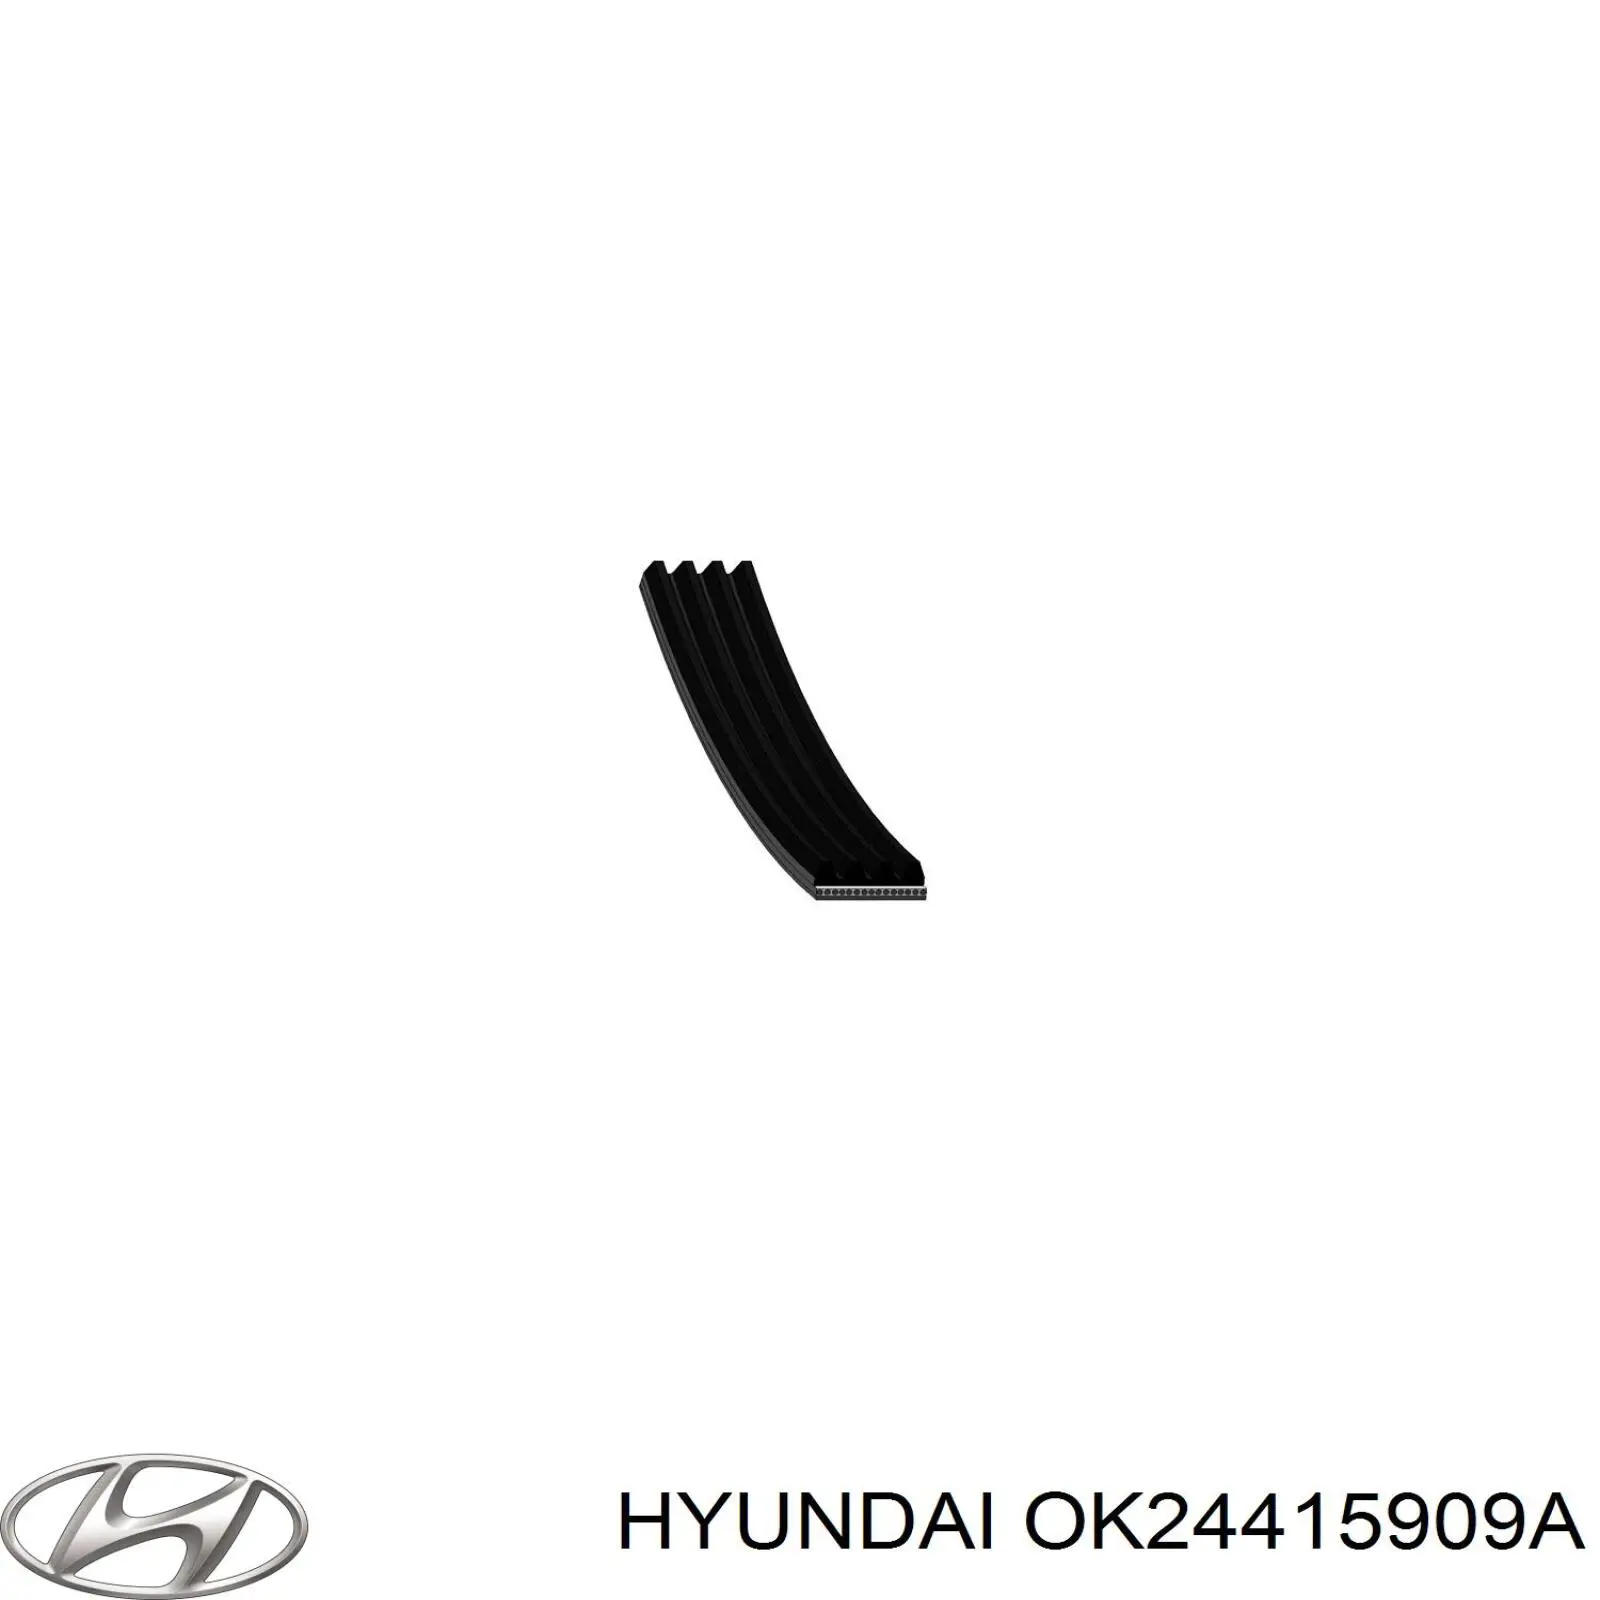 OK24415909A Hyundai/Kia correa trapezoidal